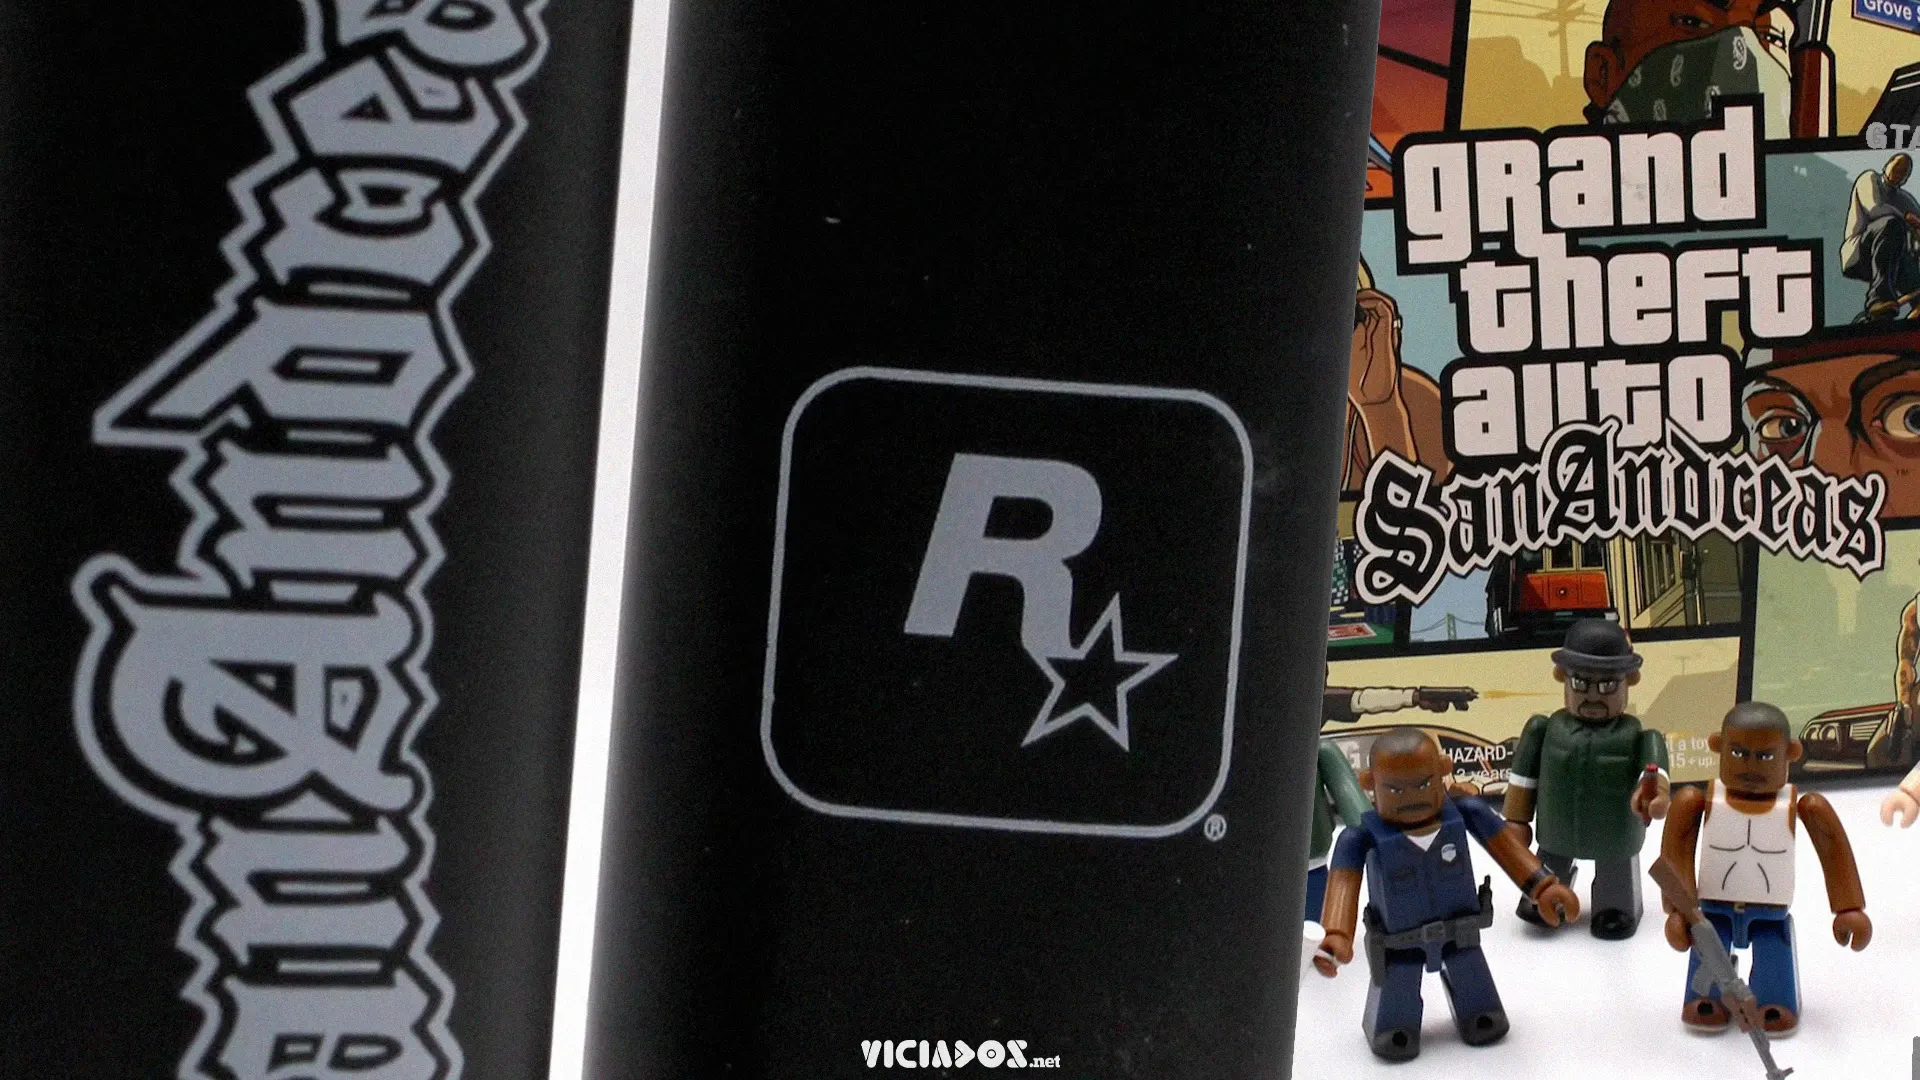 Rockstar Games Collection reúne grandes sucessos a um preço camarada